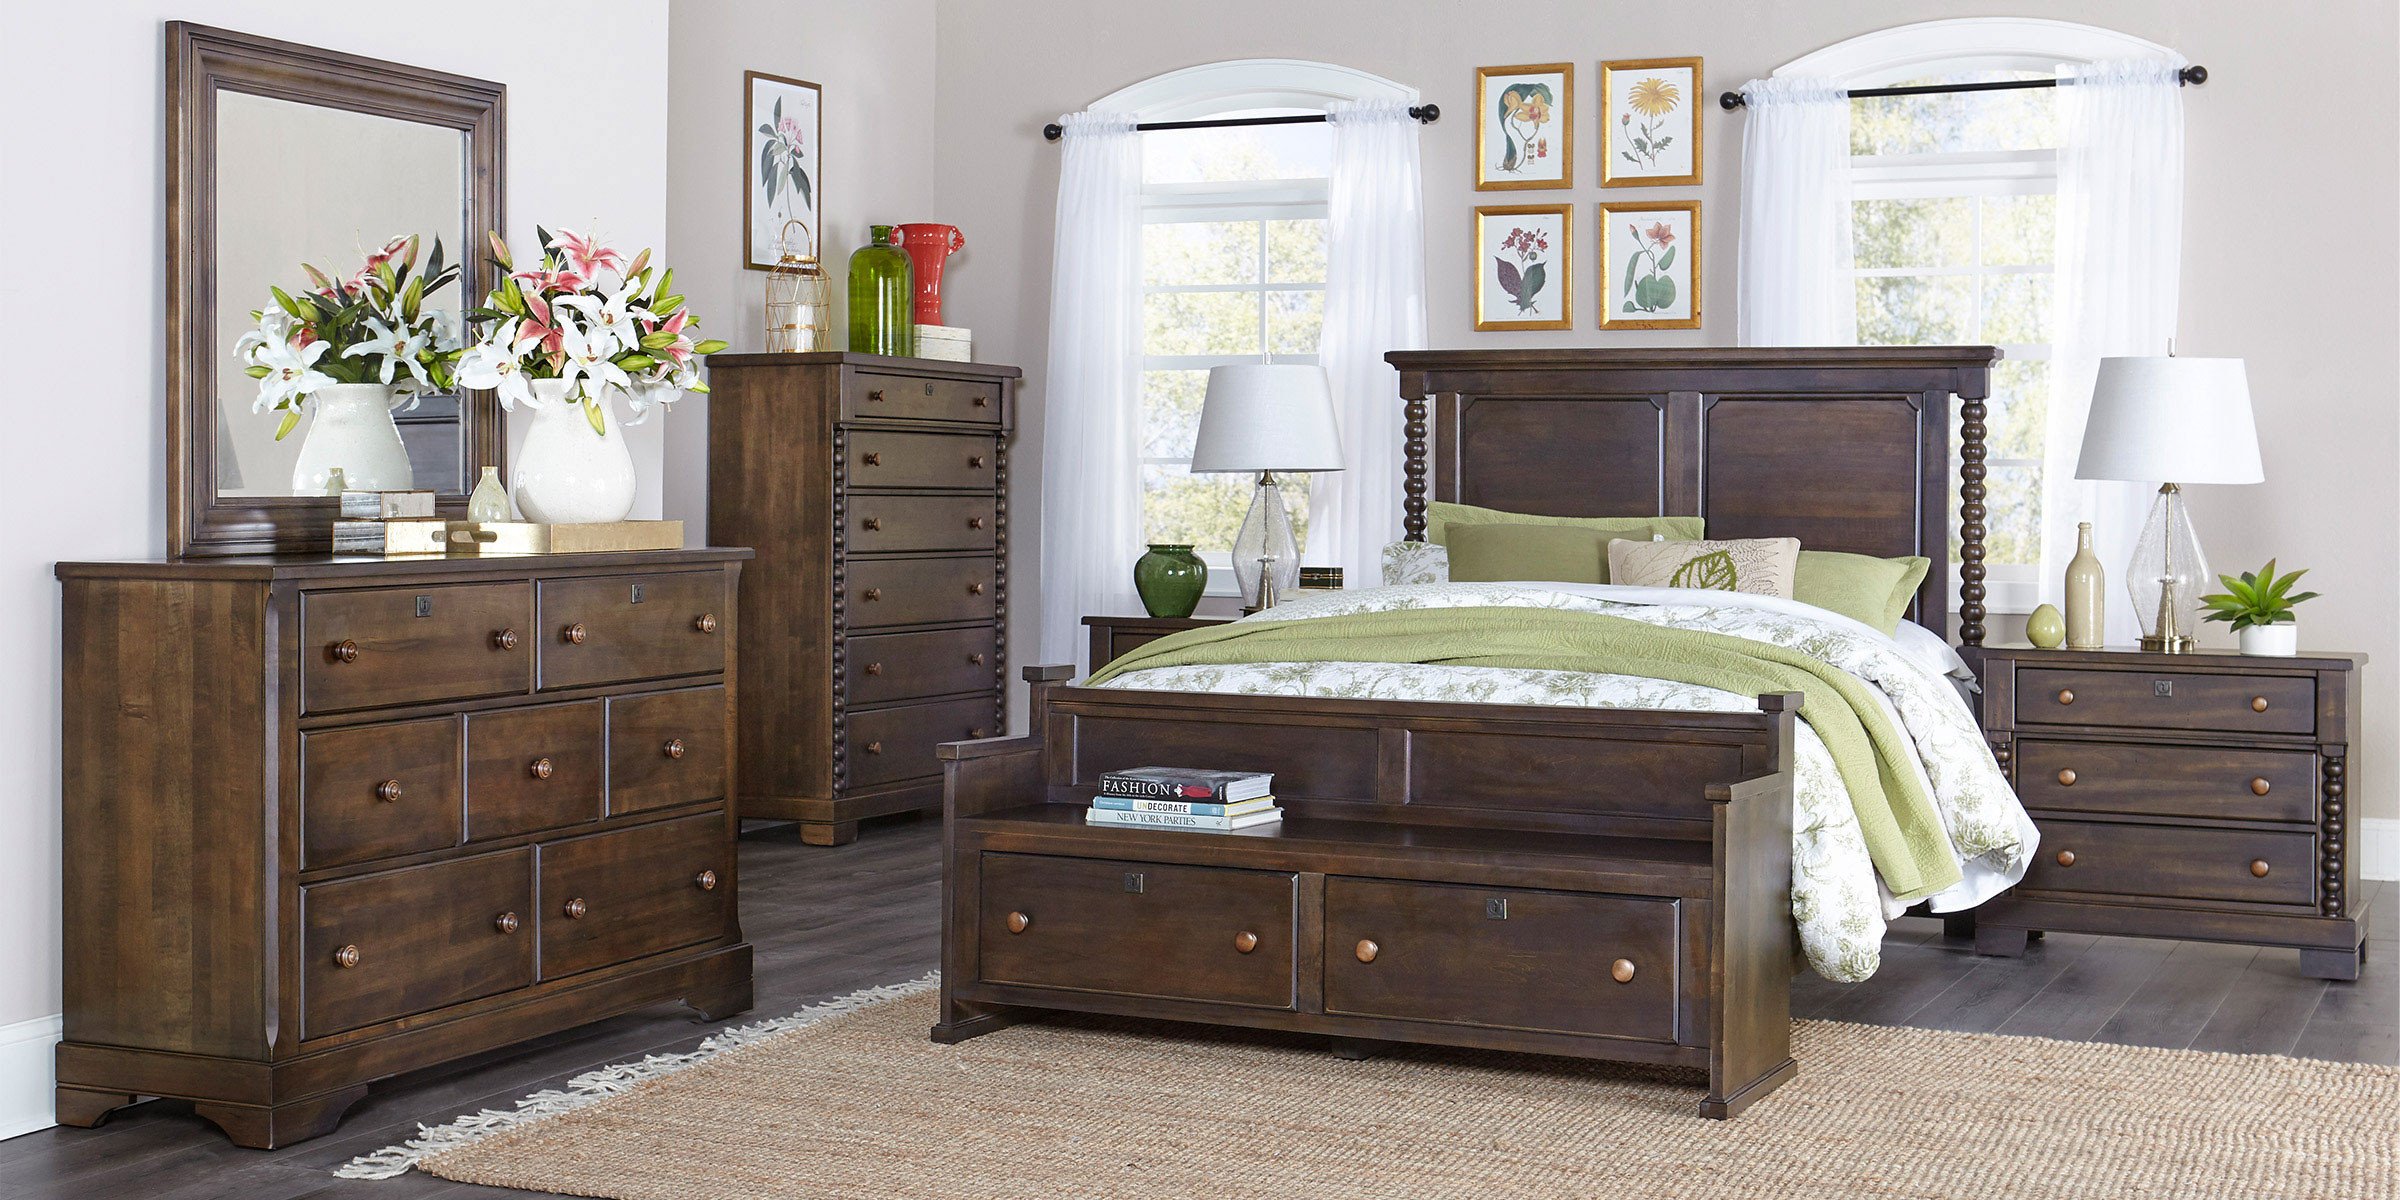 bedroom furniture in costco